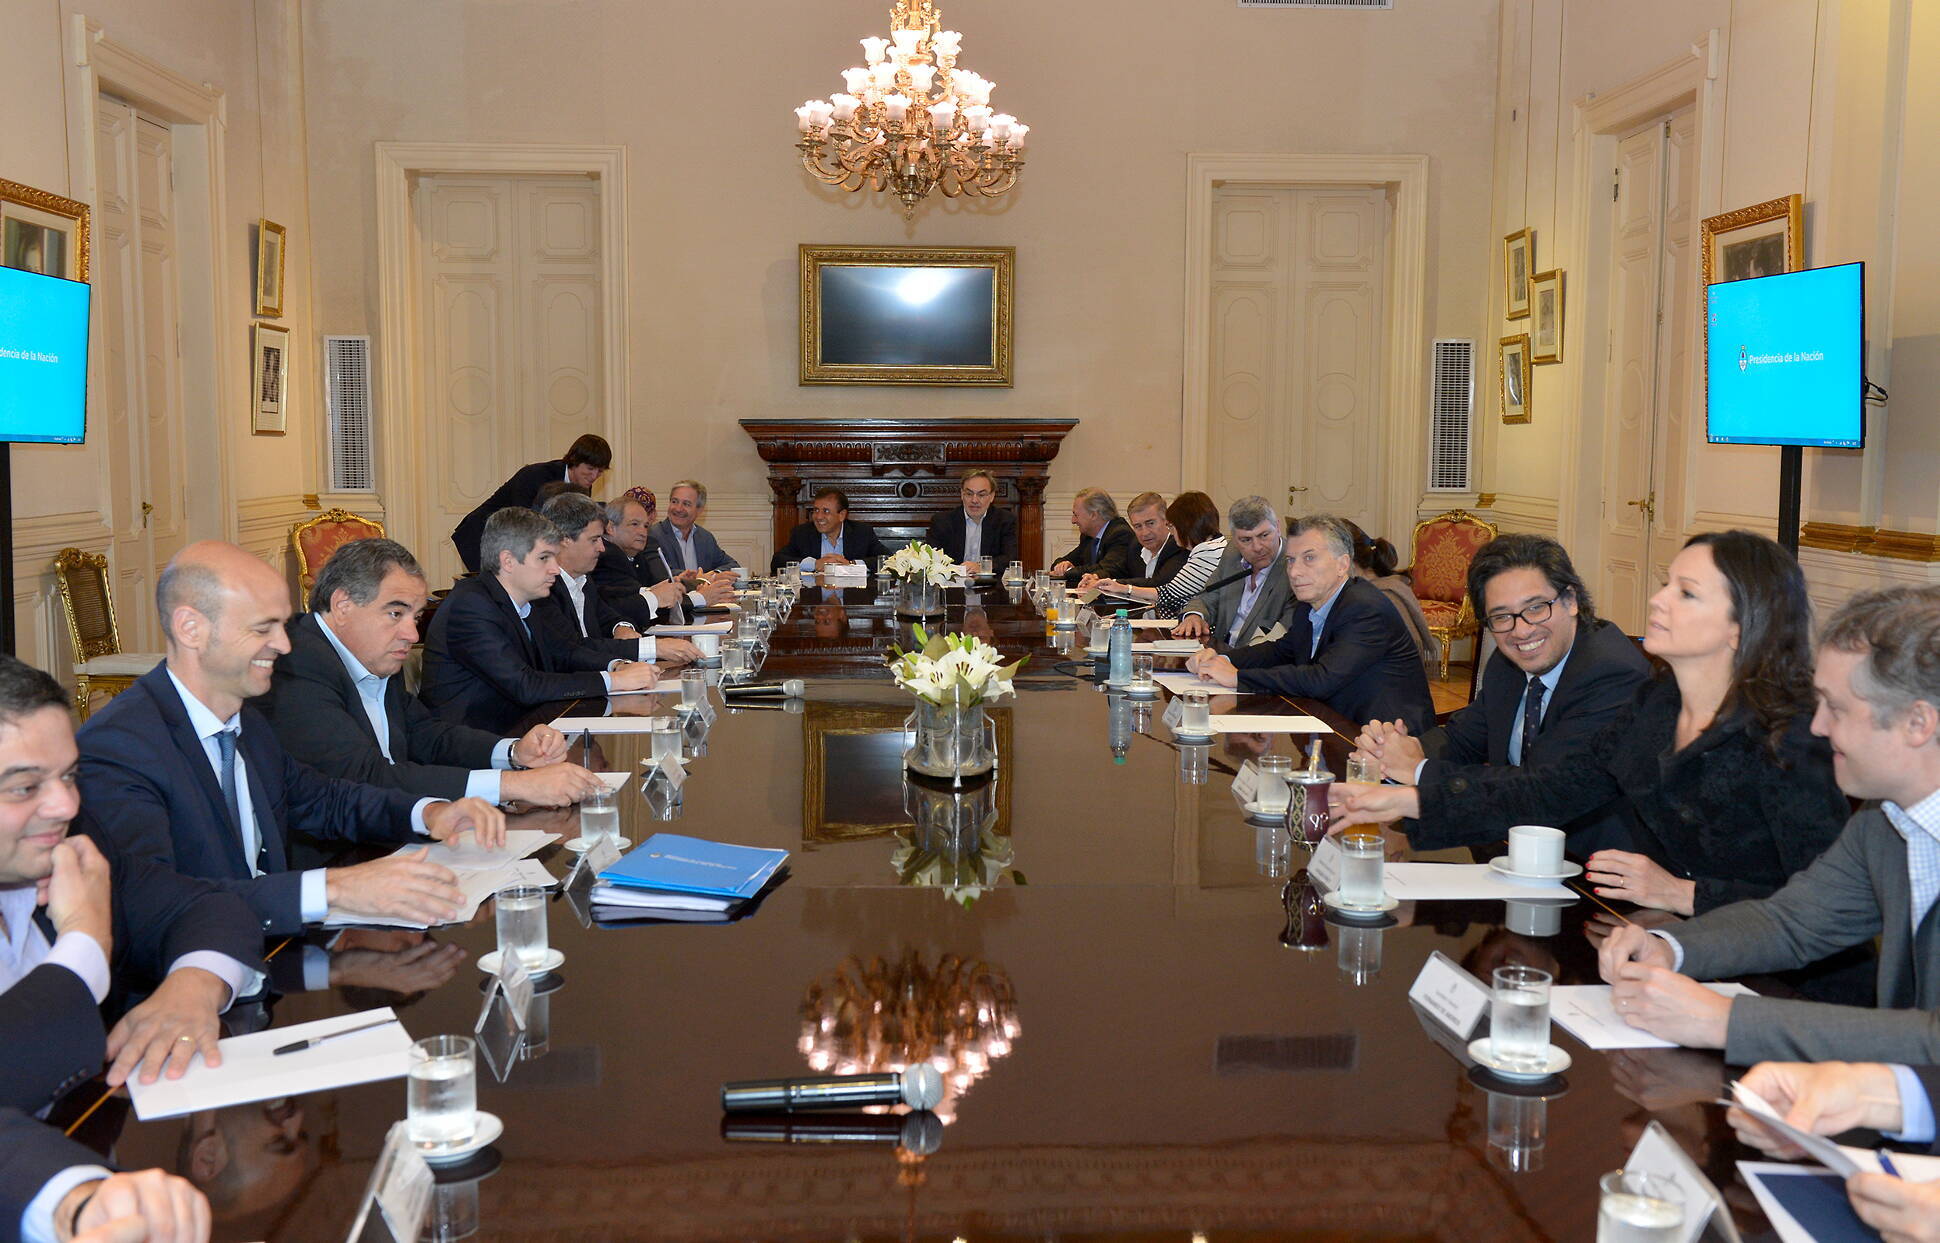 El presidente Mauricio Macri encabezó una reunión de Gabinete